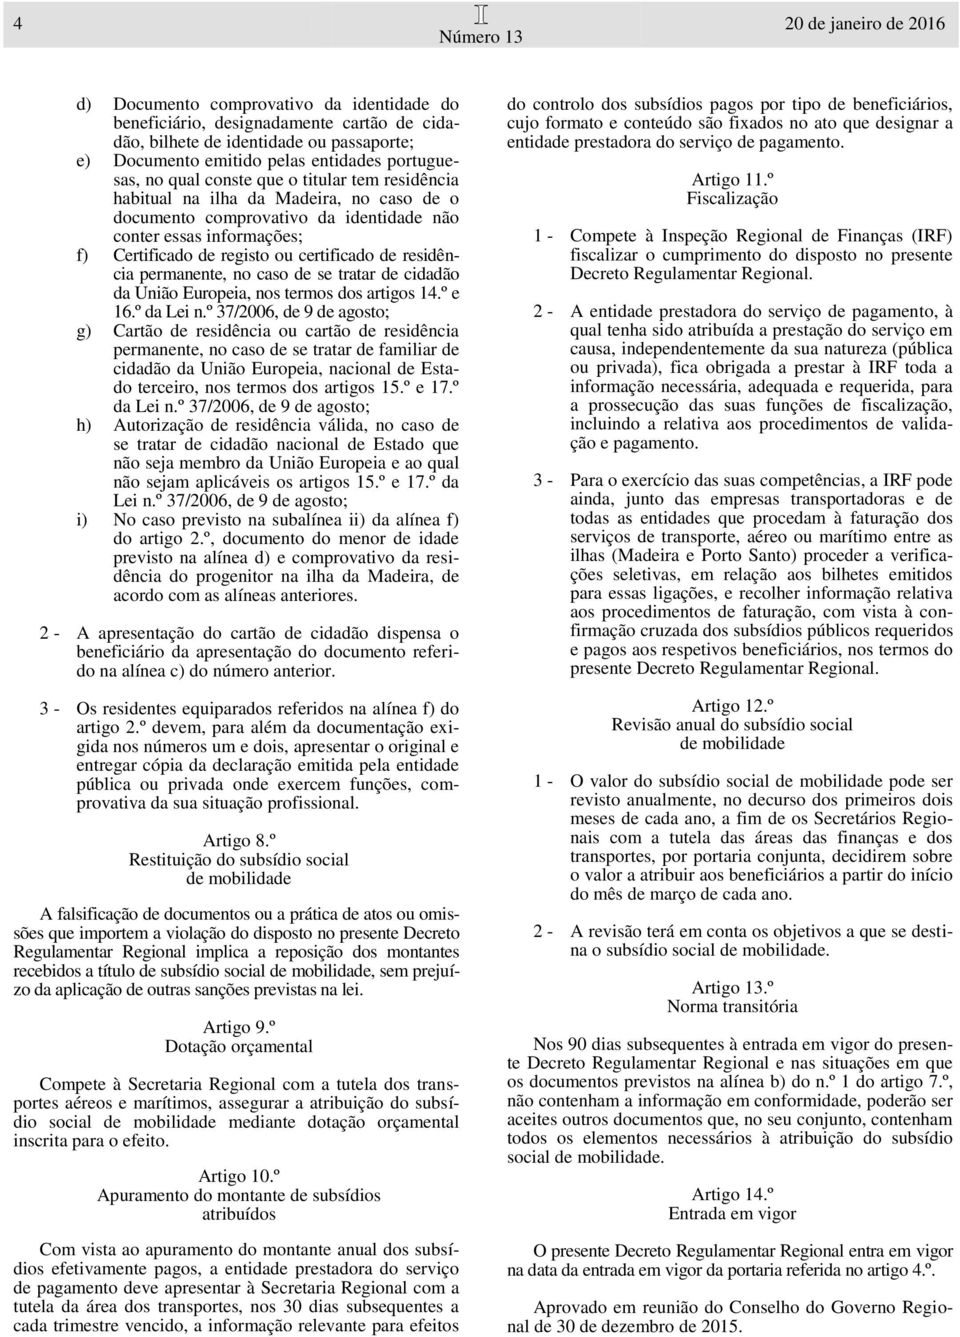 certificado de residência permanente, no caso de se tratar de cidadão da União Europeia, nos termos dos artigos 14.º e 16.º da Lei n.